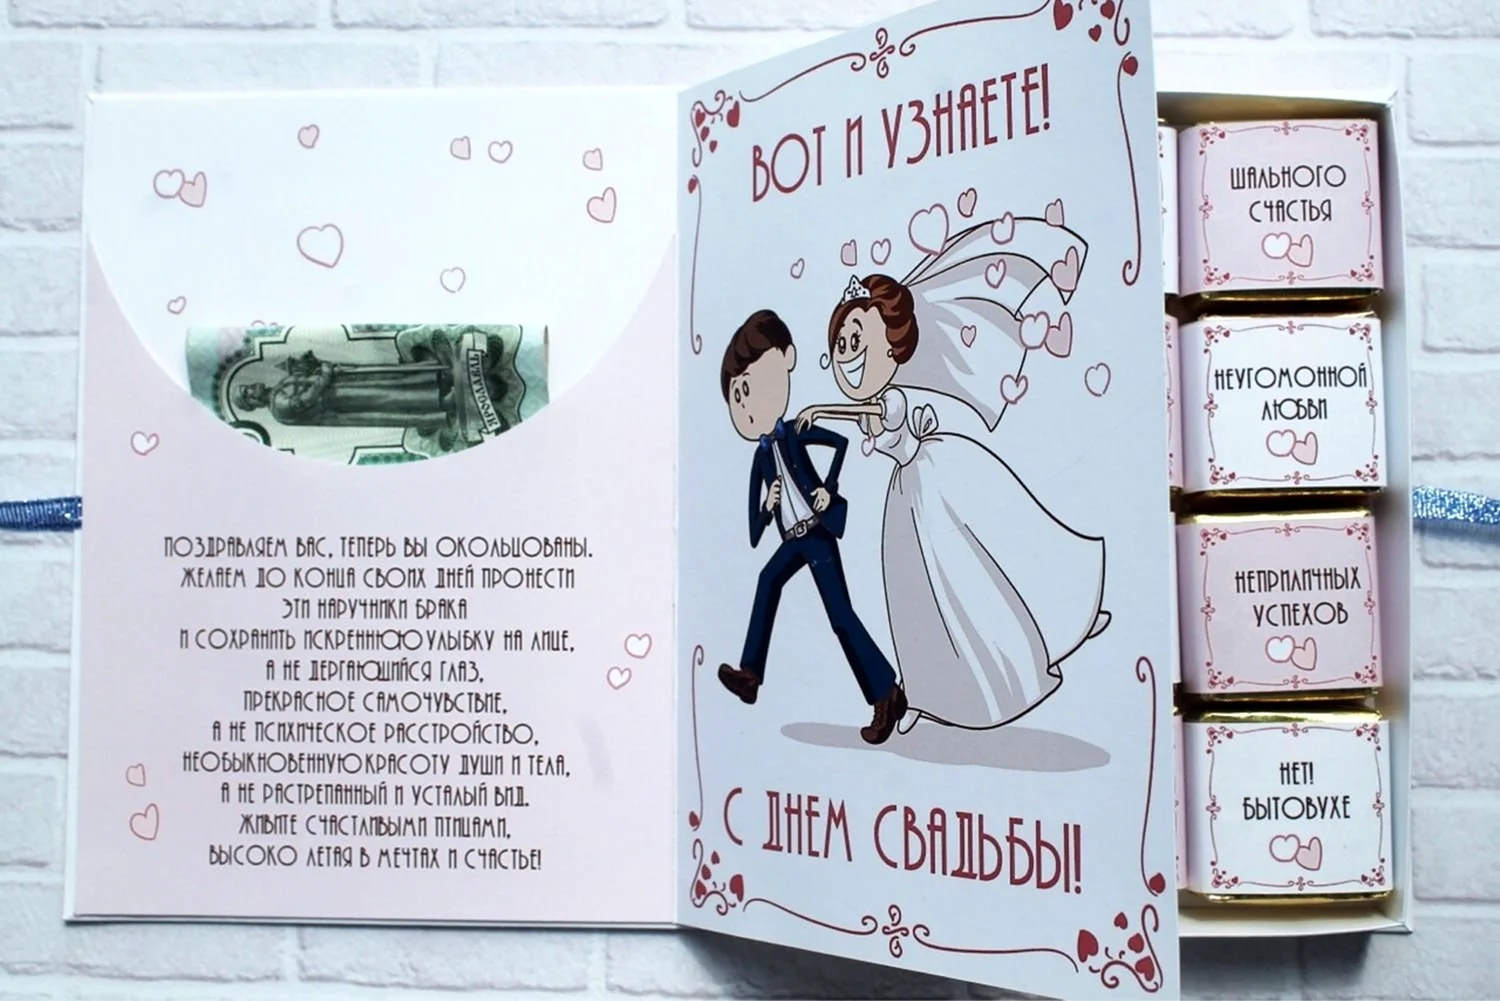 3-й Рейх Плакат-листовка, пропагандирующий свадьбы- 1000 марок и больше, подарок на свадьбу